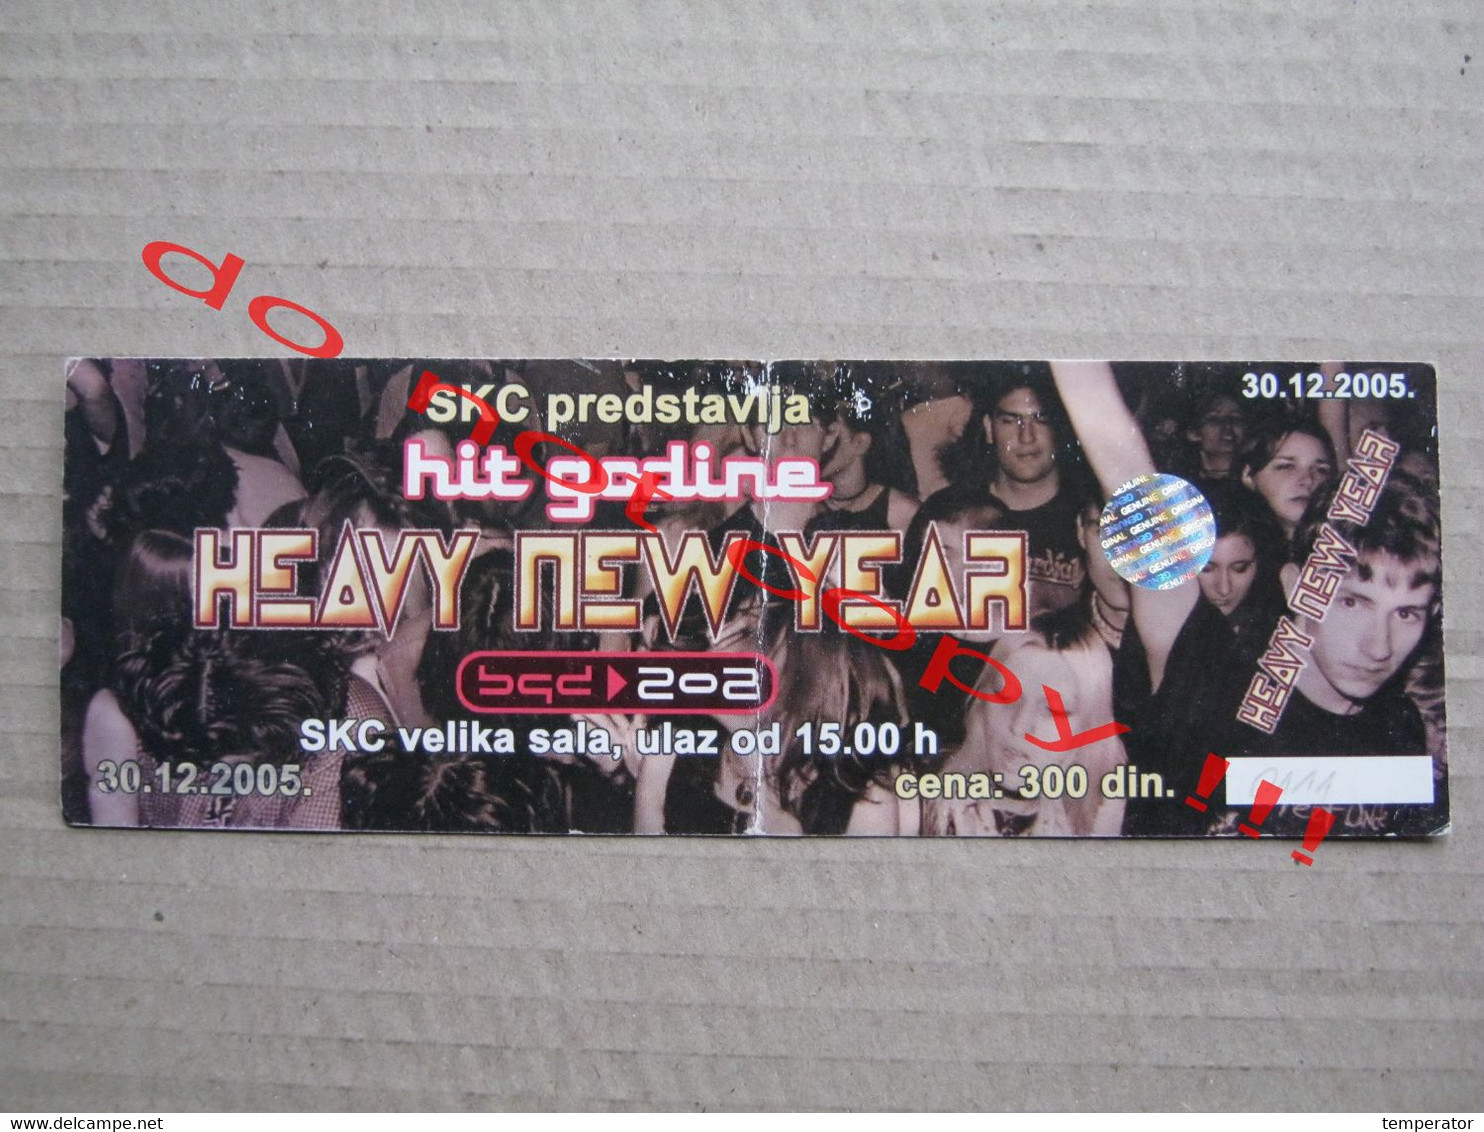 HEAVY NEW YEAR - 202 HIT GODINE ( 30.12.2005 ) / Concert Ticket - Belgrade SKC - Konzertkarten